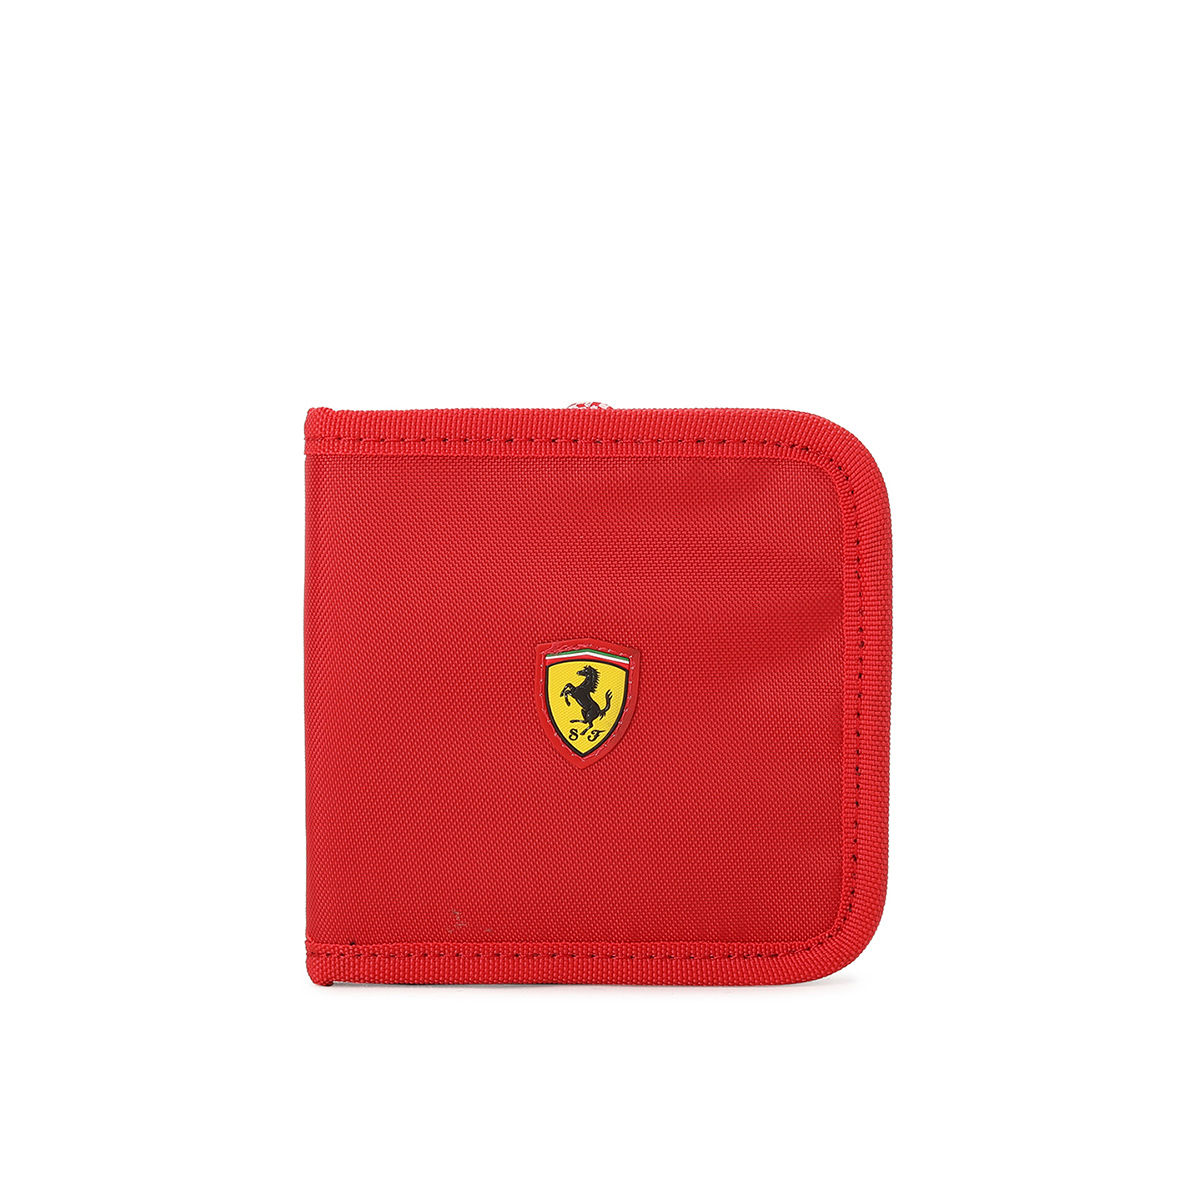 Puma Ferrari wallet - Men - 1762116685